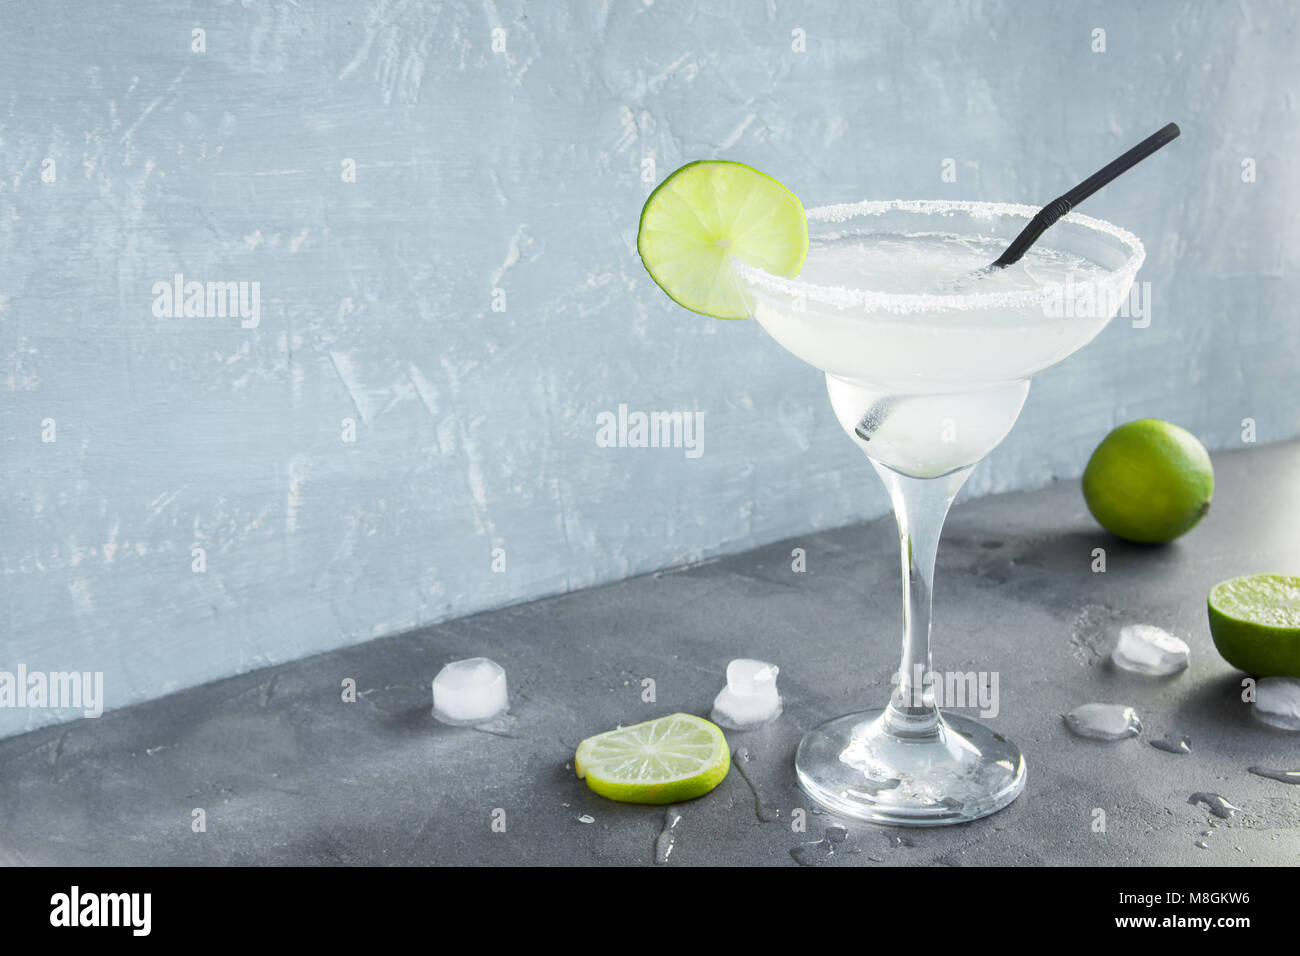 Margarita Сocktail mit Kalk und Eis auf grauem Beton Hintergrund, kopieren. Classic Margarita oder Daiquiry Cocktail. Stockfoto